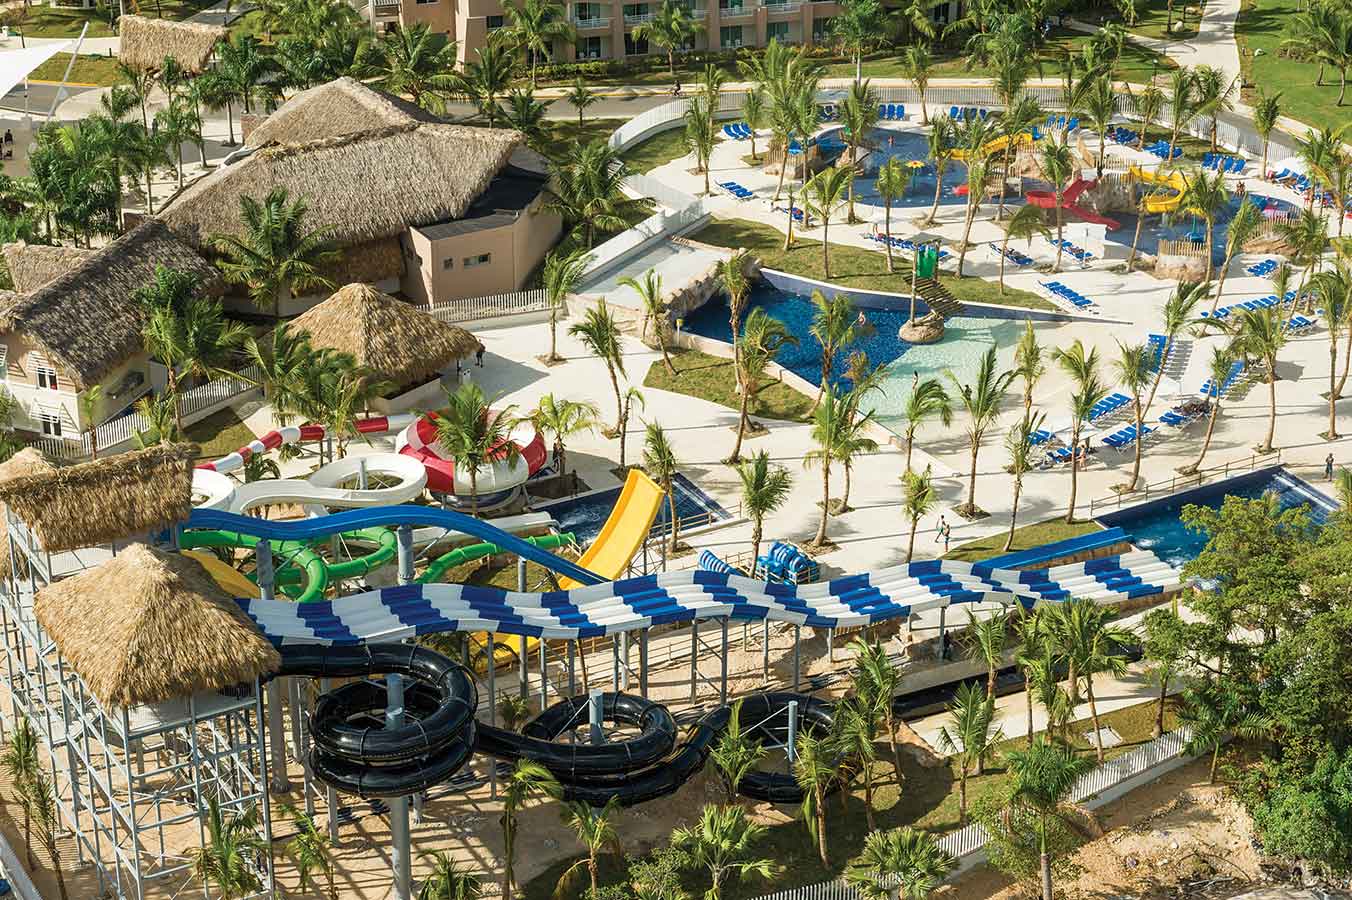 Royalton Punta Cana Resort E Casino Imagens